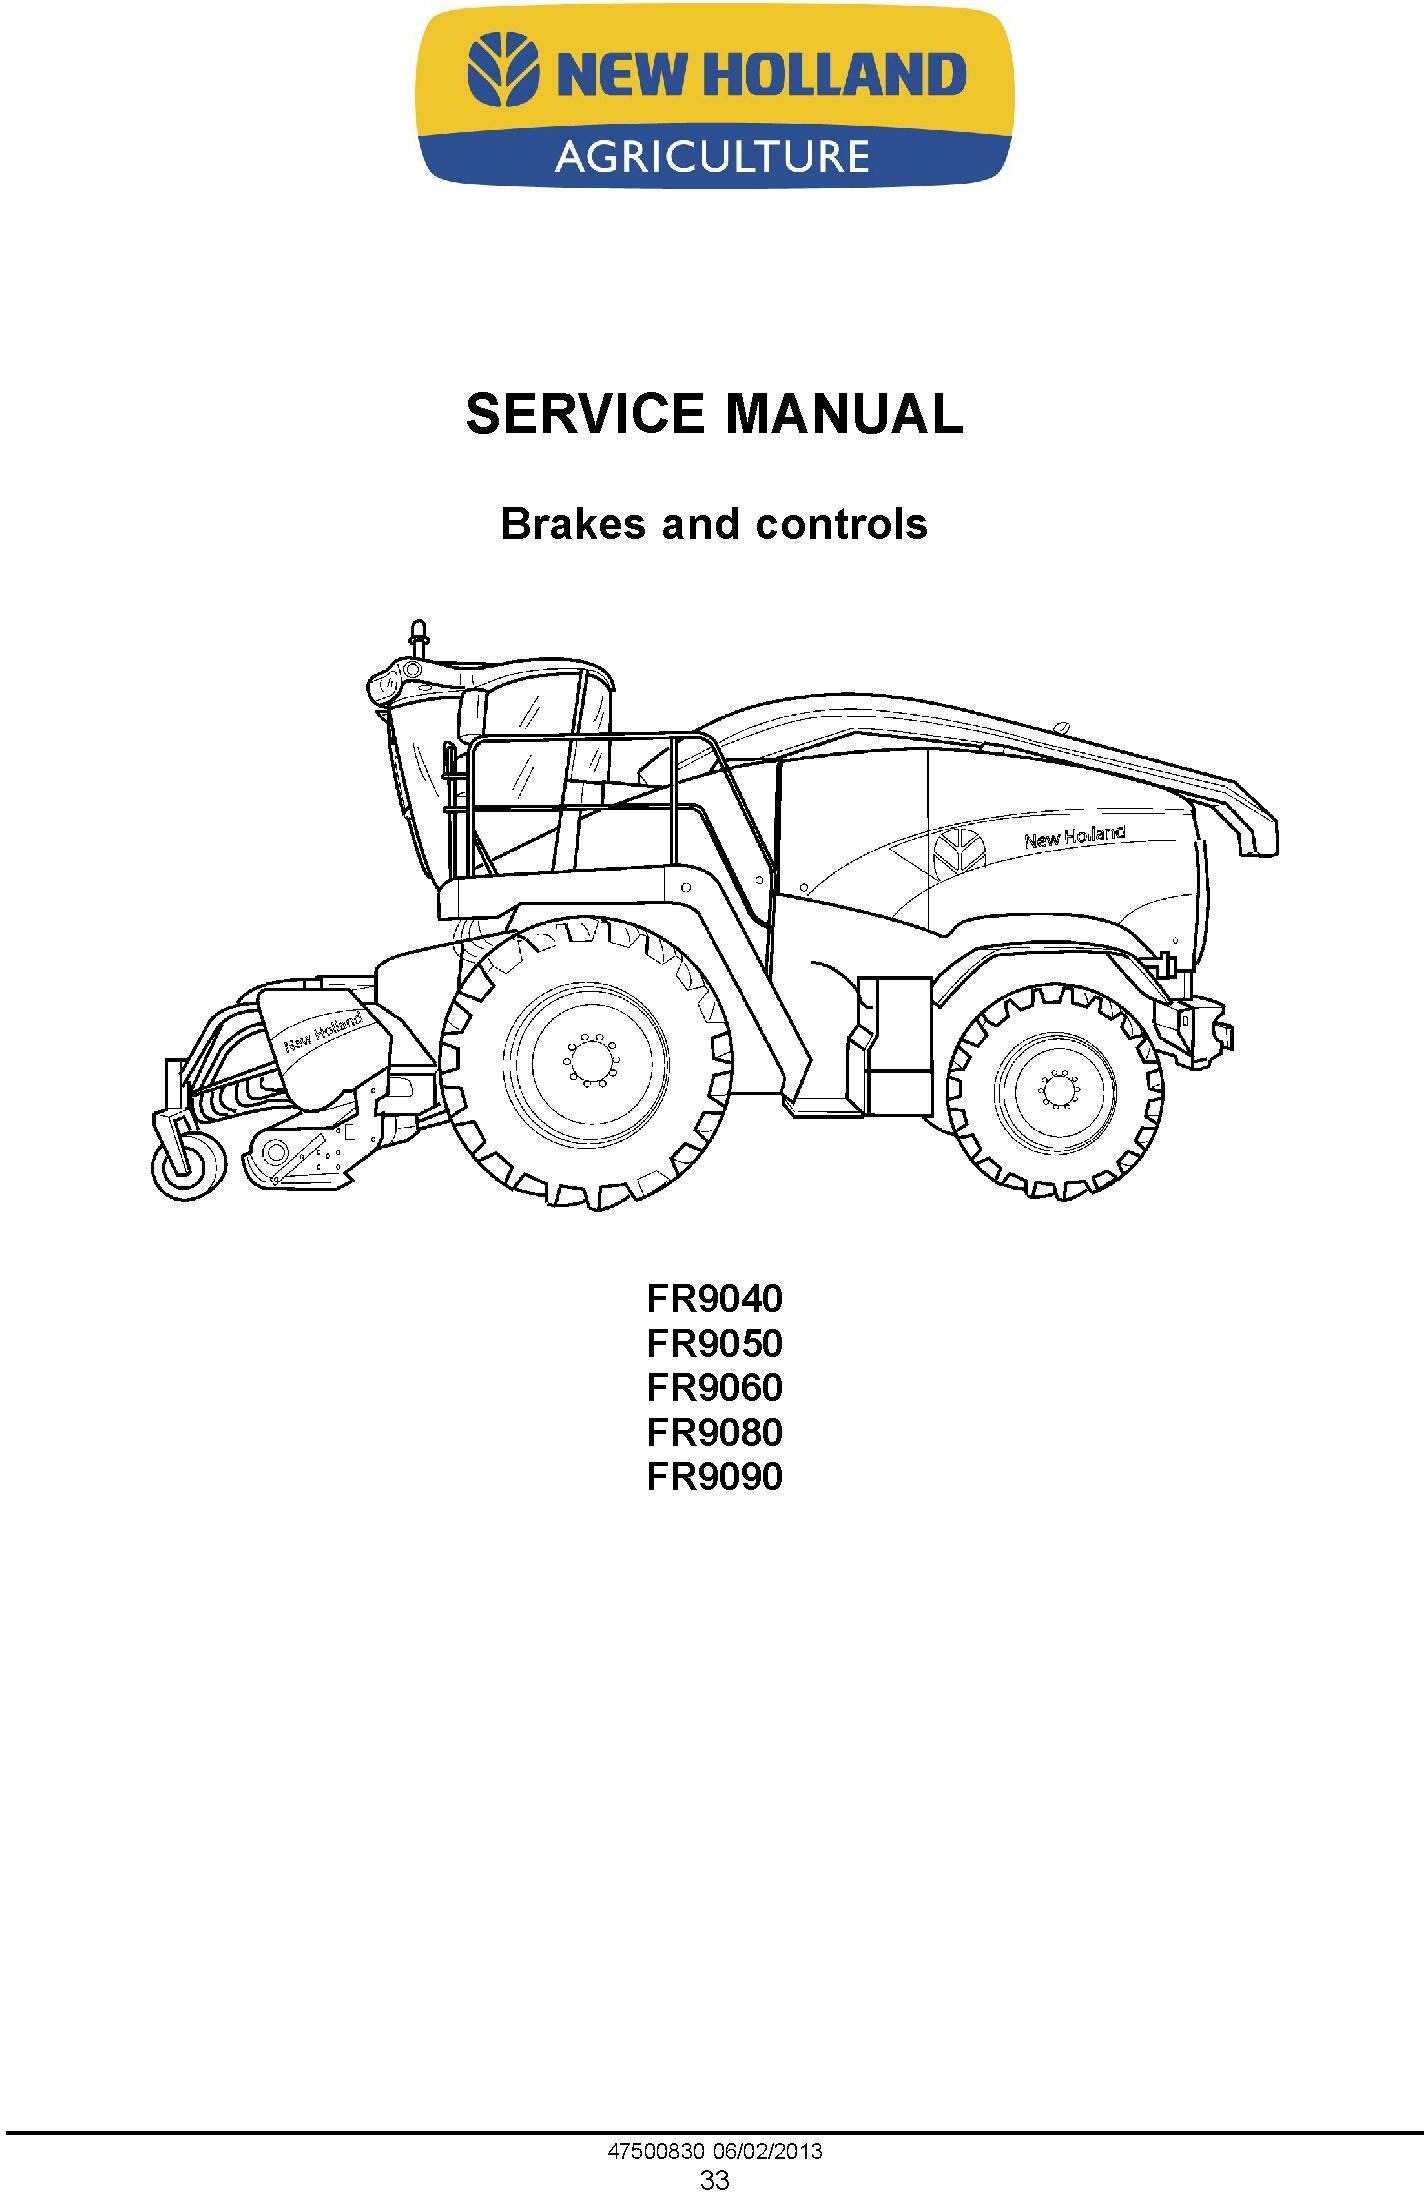 New Holland FR9040, FR9050, FR9060, FR9080, FR9090 Forage Harvester Complete Service Manual - 1